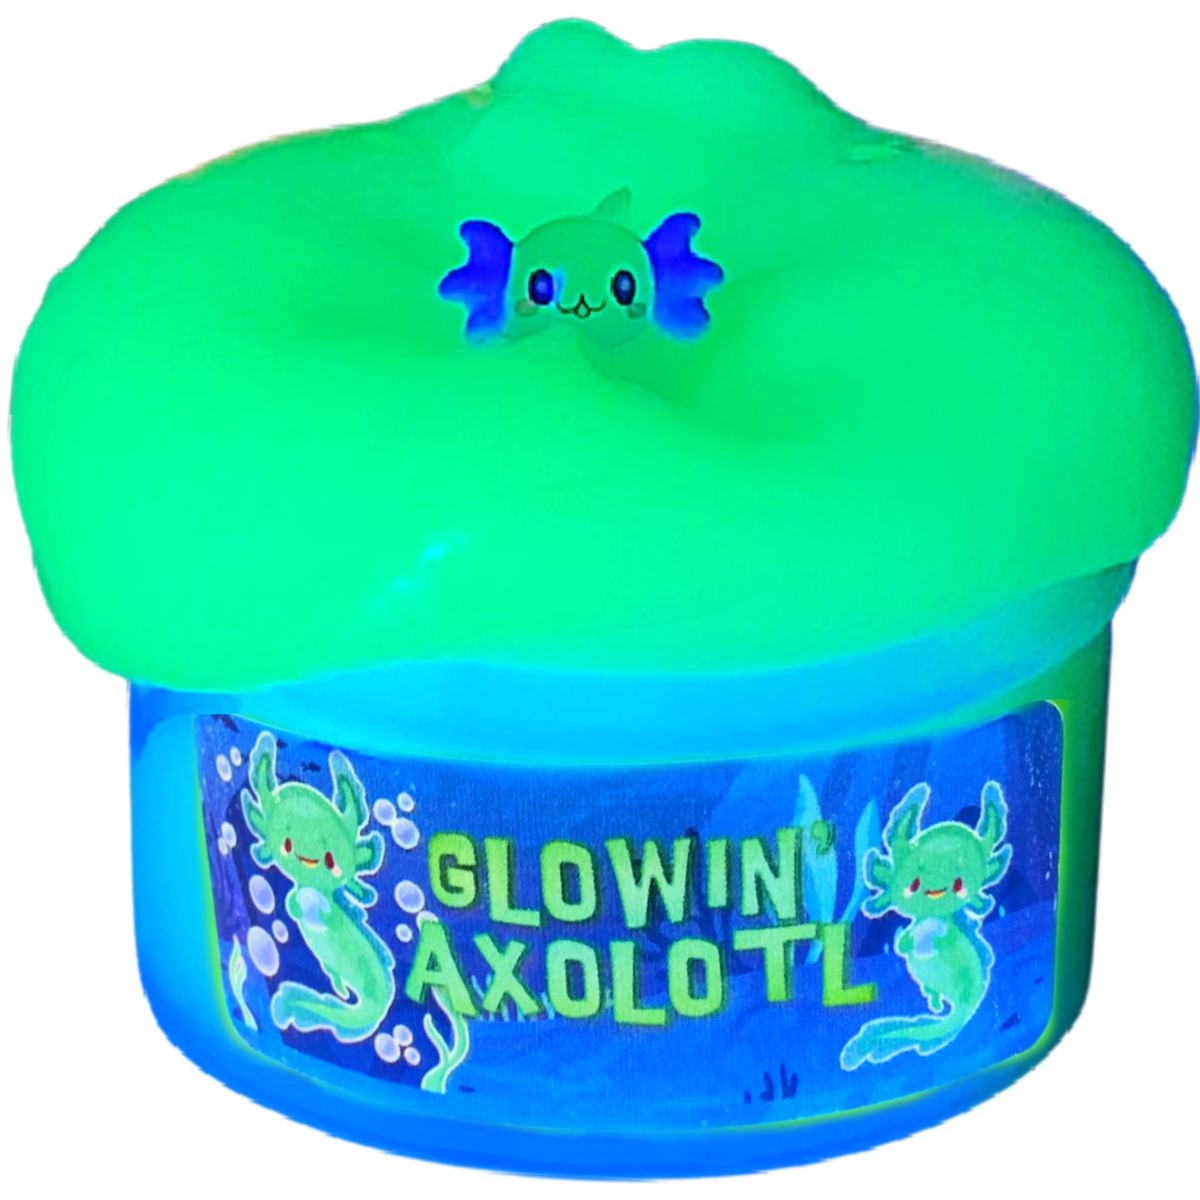 Glow in the Dark Axolotl Slime